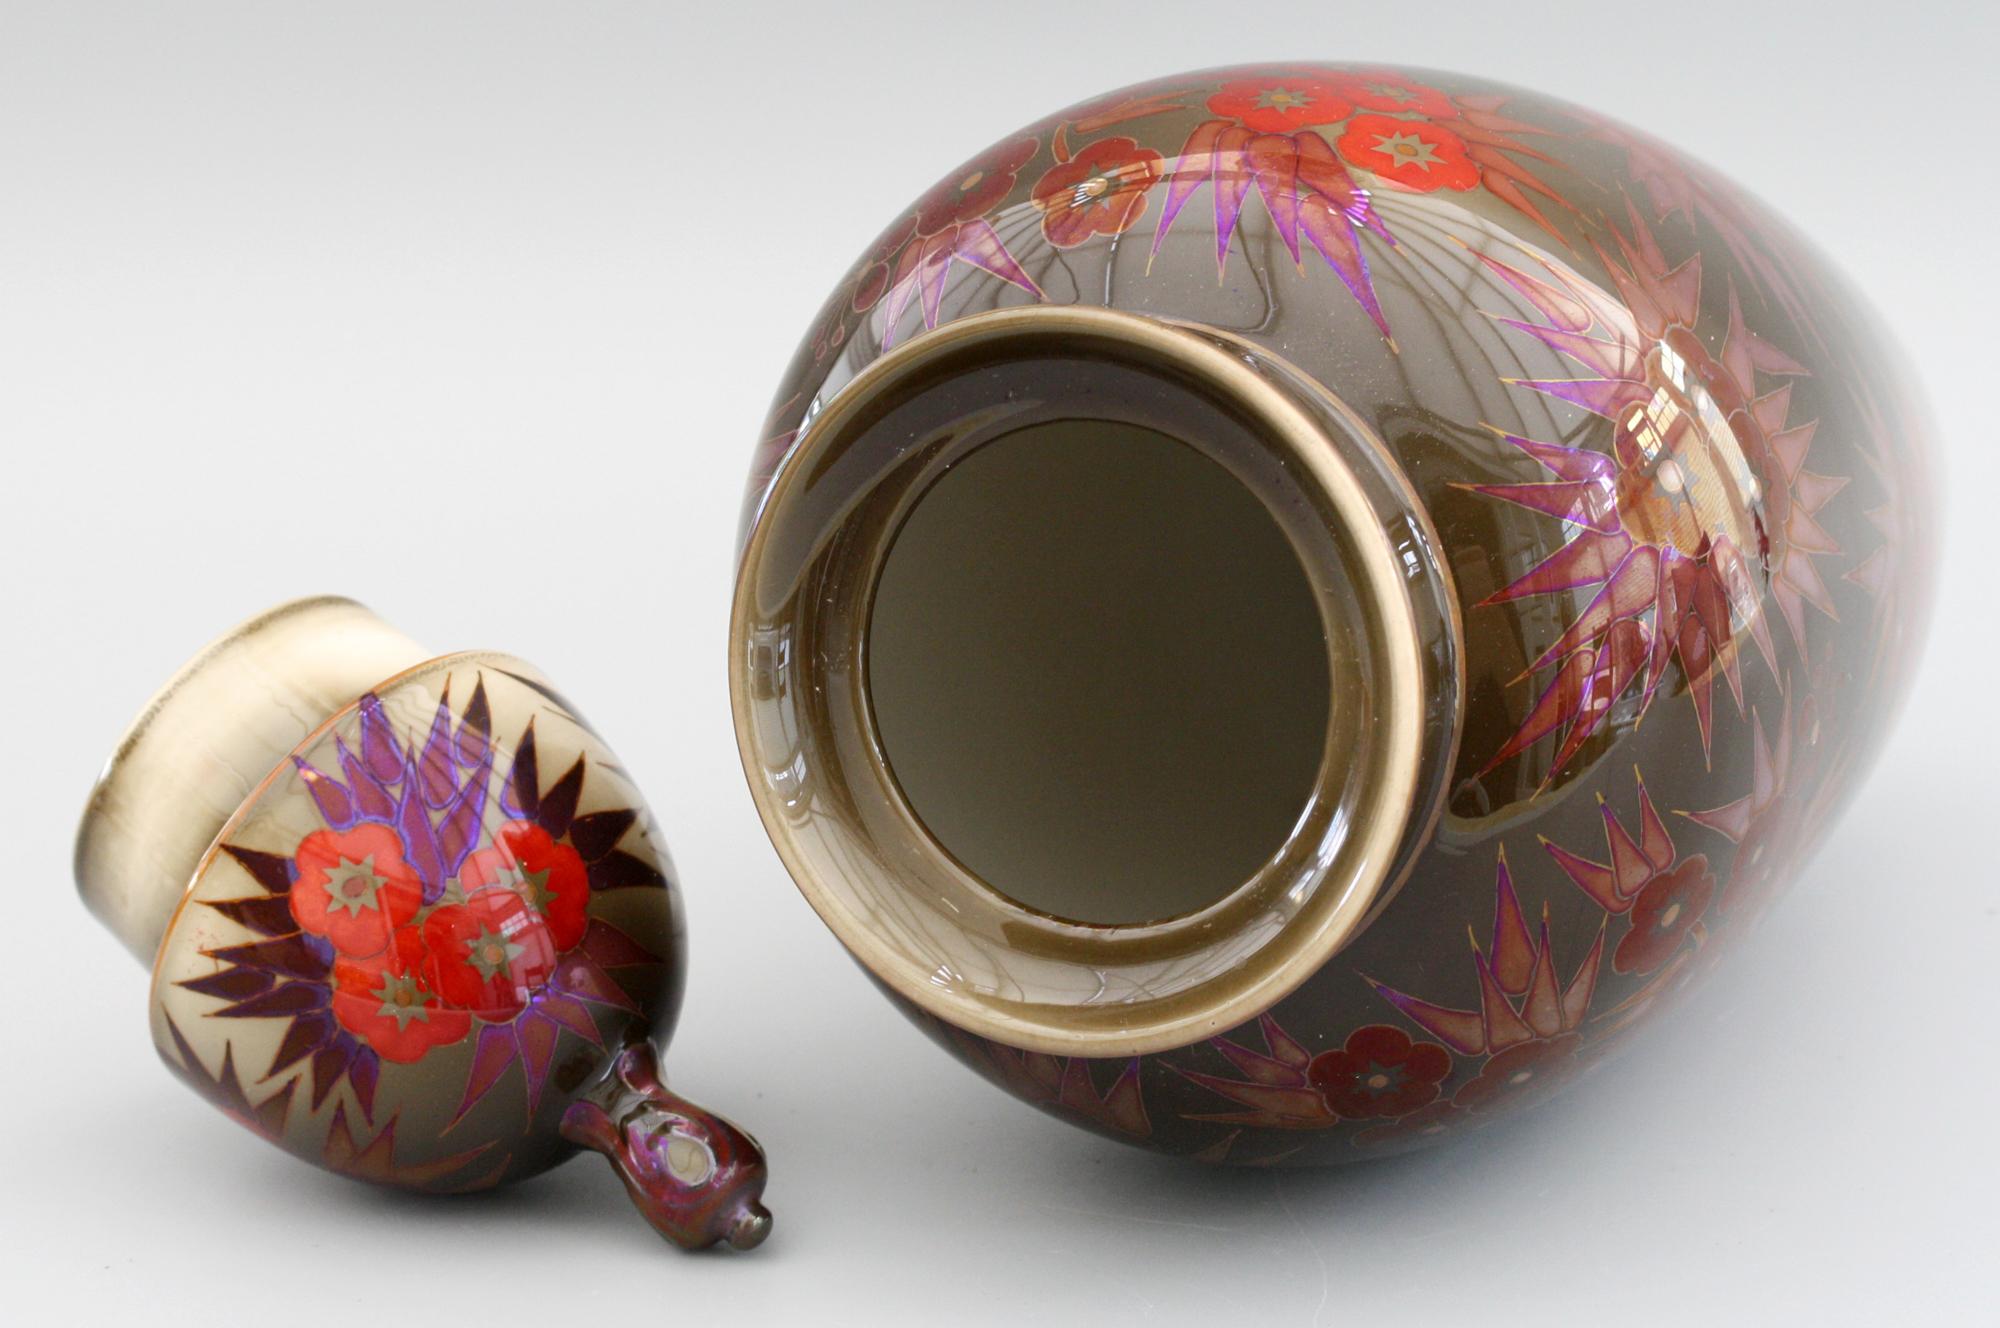 Un impressionnant vase à couvercle en glaçure Eosin de Zsolnay Pecs peint à la main avec des grappes florales datant d'environ 1930. Cet étonnant vase de forme bulbeuse, finement réalisé, présente un col court et arrondi avec un évidement et un